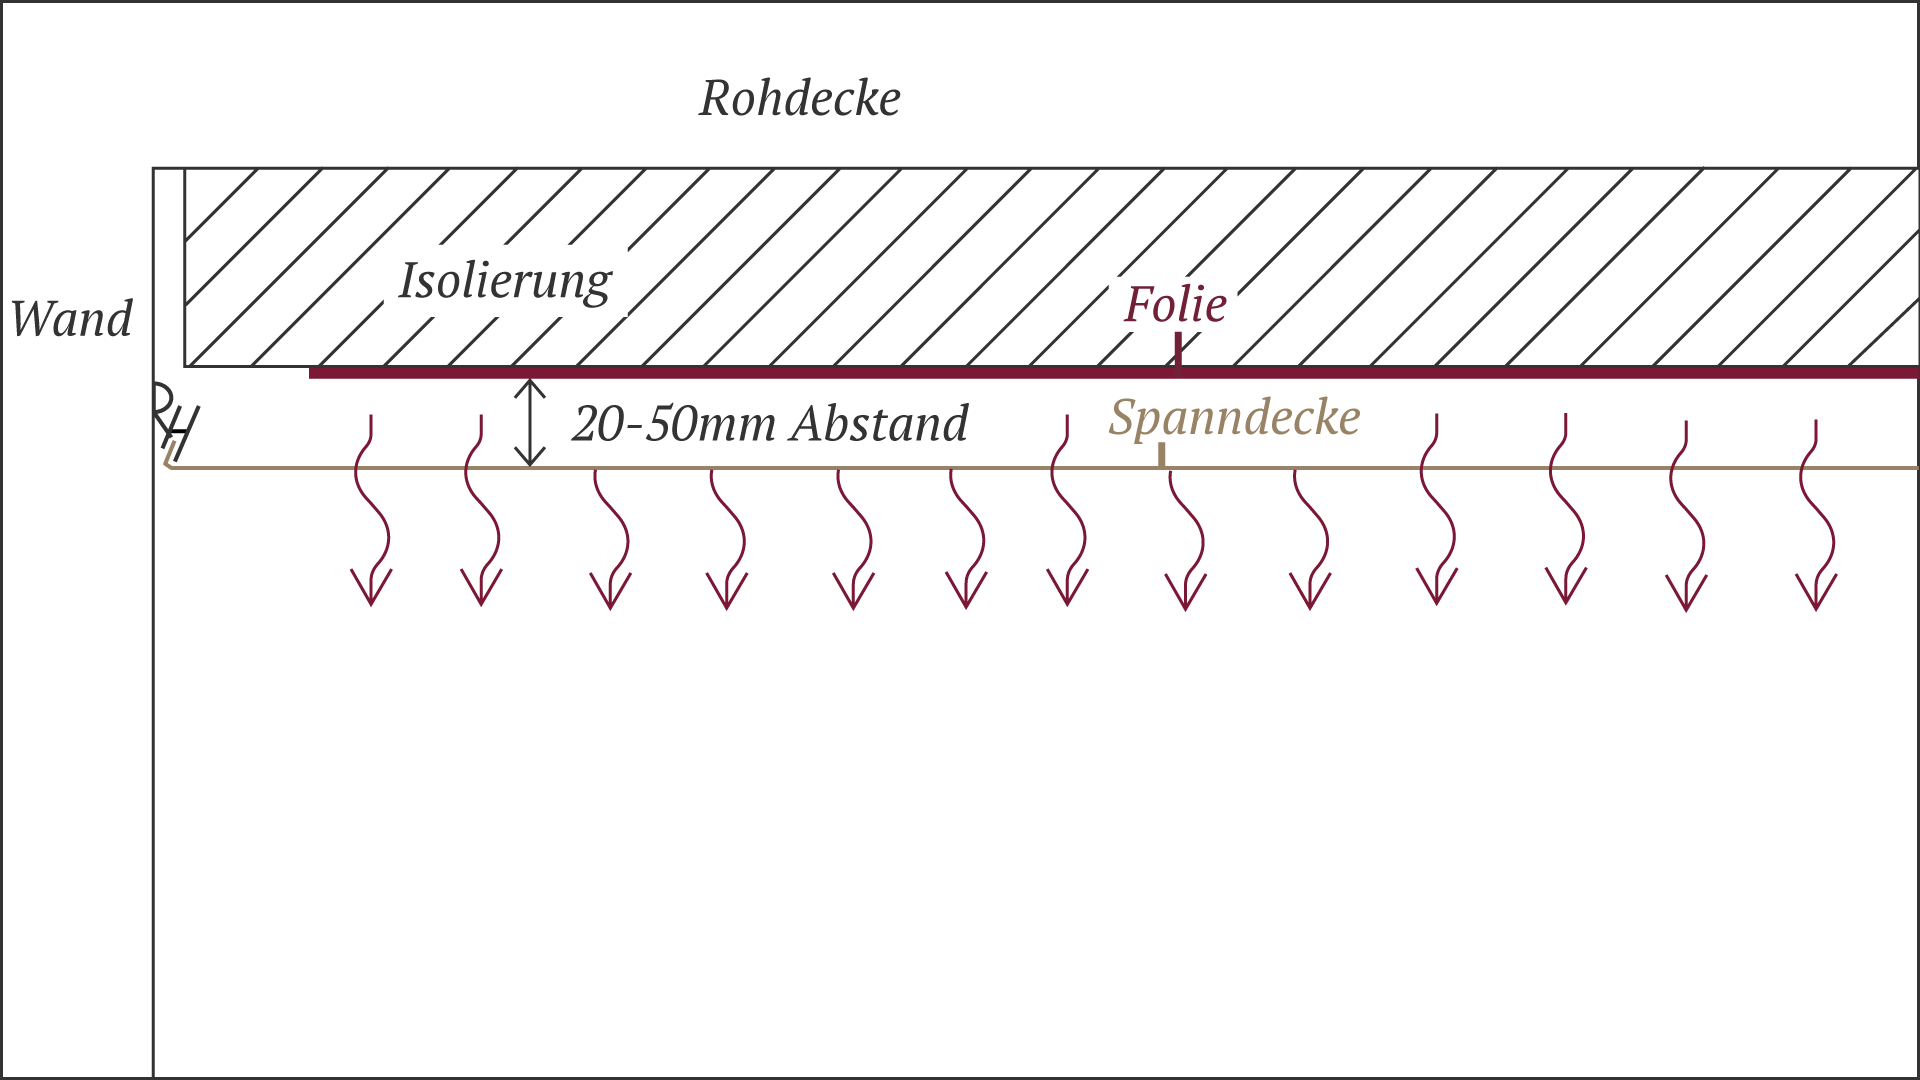 Die Grafik erklärt, dass an der gewohnten Decke zuerst eine Isolierung und dann darauf die Heizfolie angebracht wird. Das Konstrukt wird danach mit einem Abstand von bis zu 5 Zentimetern mit einer Spanndecke verdeckt.